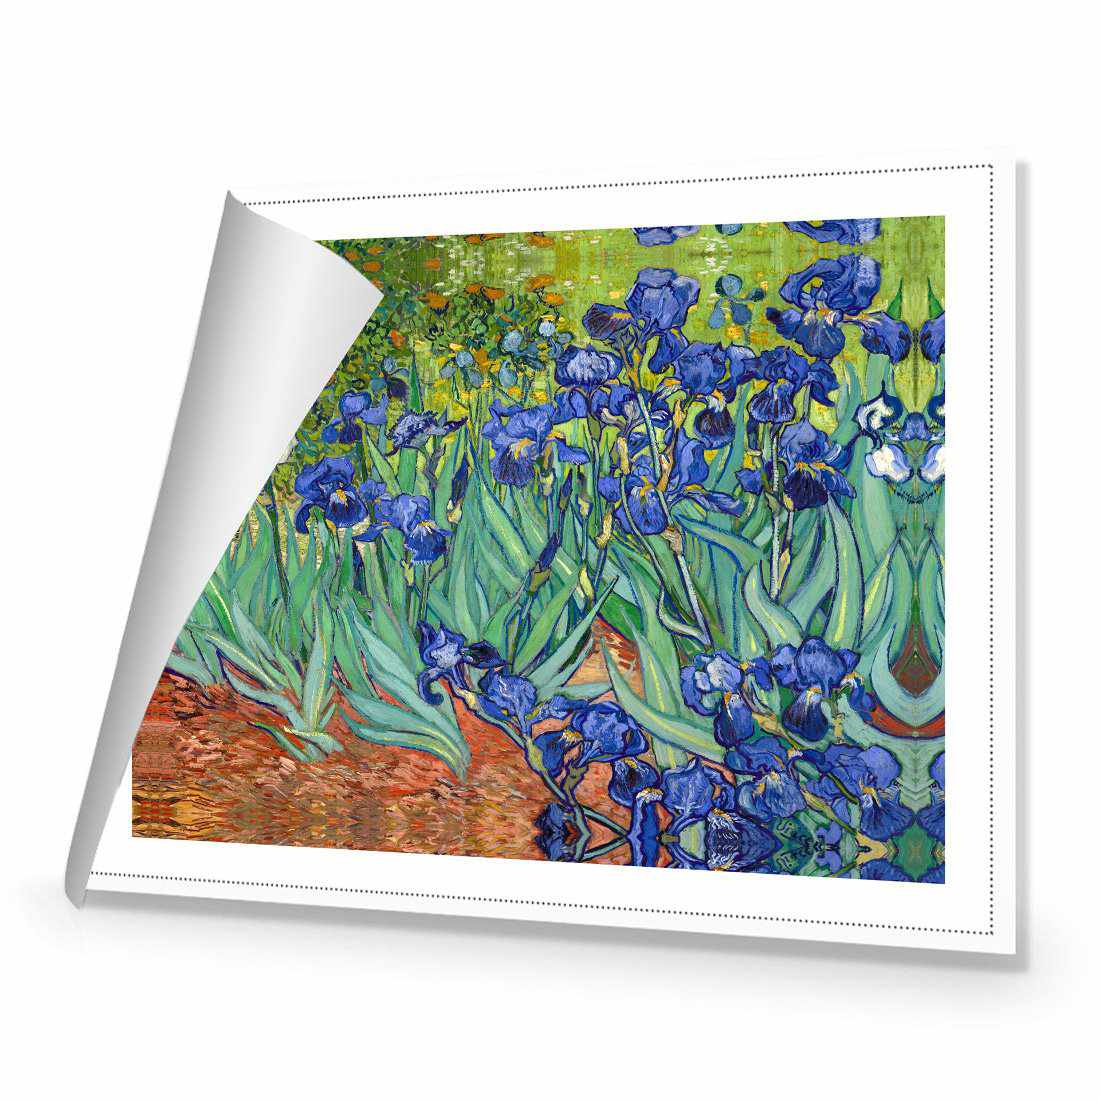 Irises 2 - Van Gogh Canvas Art-Canvas-Wall Art Designs-45x30cm-Rolled Canvas-Wall Art Designs